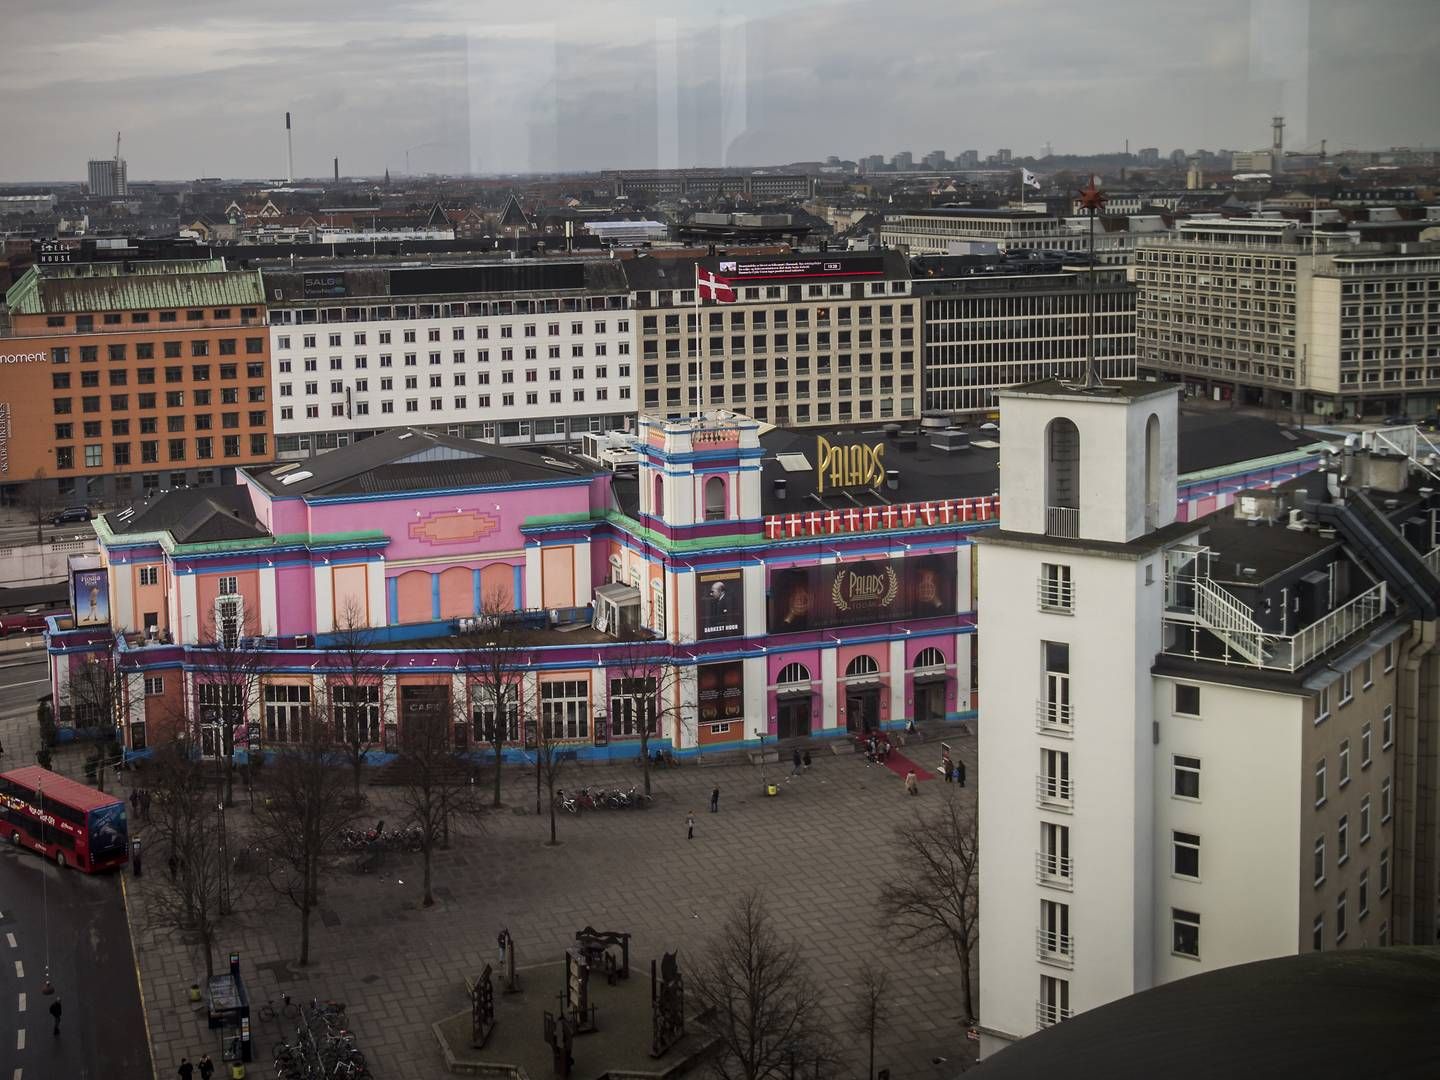 Palads ligger centralt placeret i København på Axeltorv mellem Vesterport og Rådhuspladsen. | Foto: Jonas Olufson